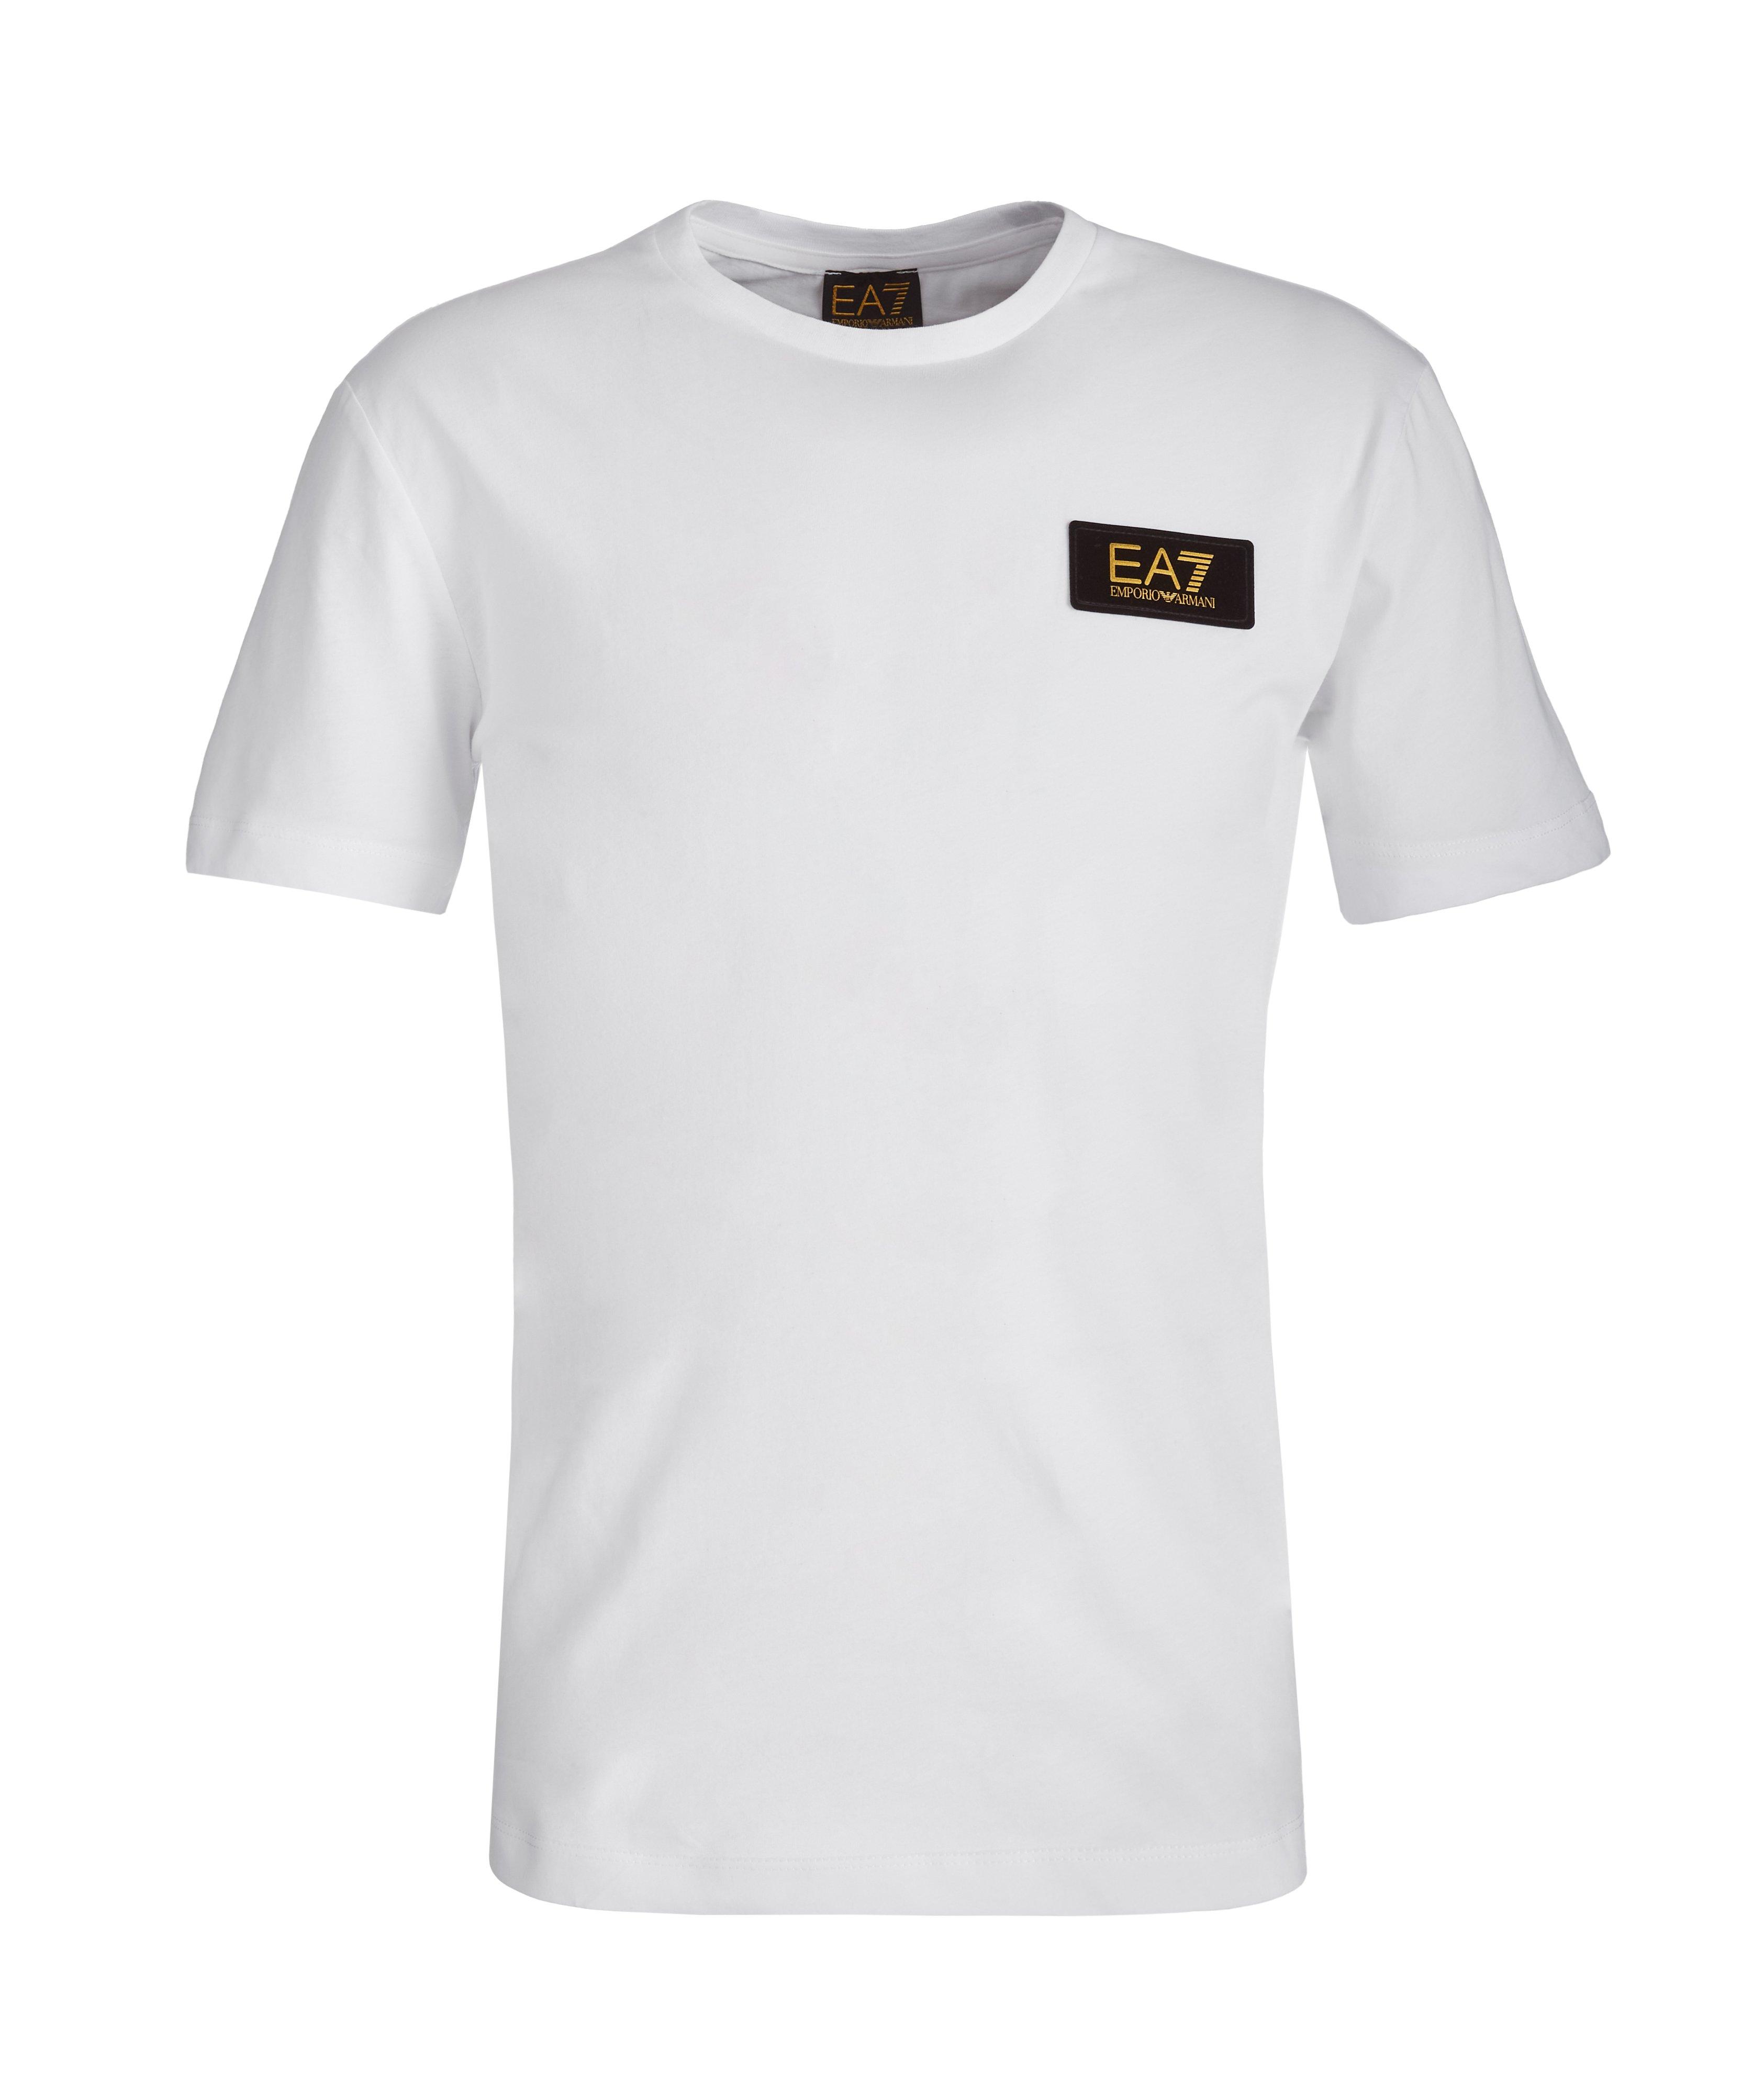 T-shirt en coton avec écusson de marque image 0